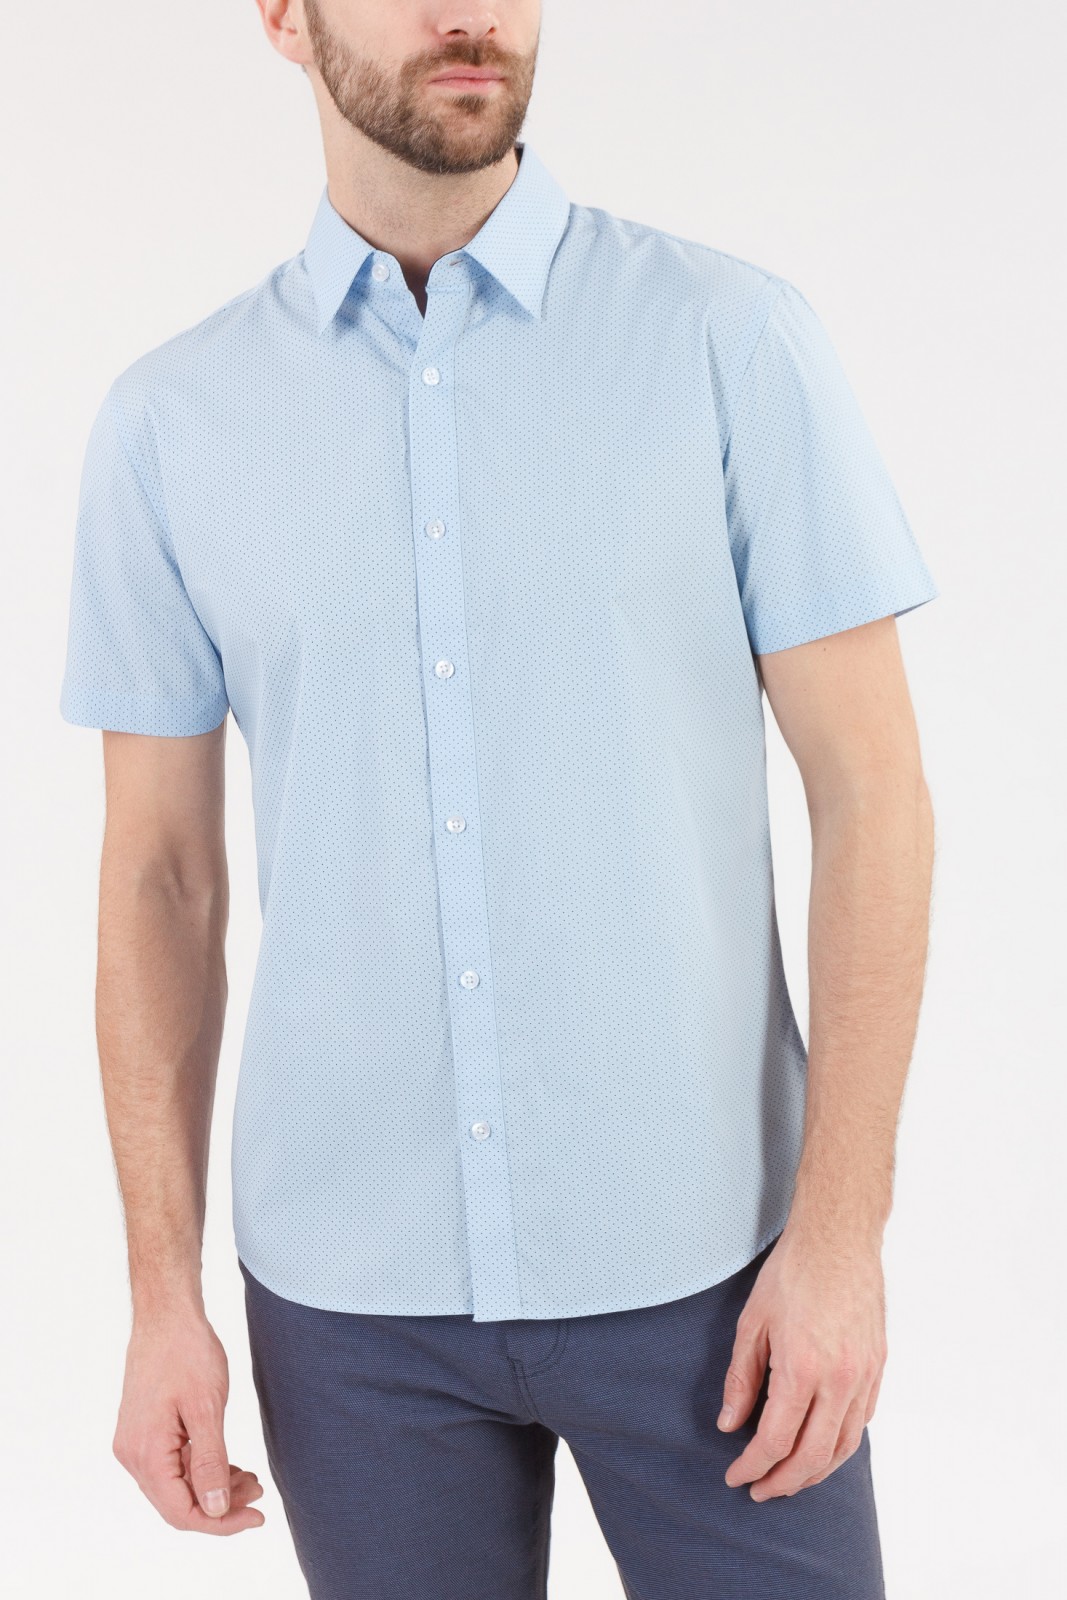 Рубашка с  короткими рукавами zolla 010222259052, цвет светло-голубой, размер S - фото 1